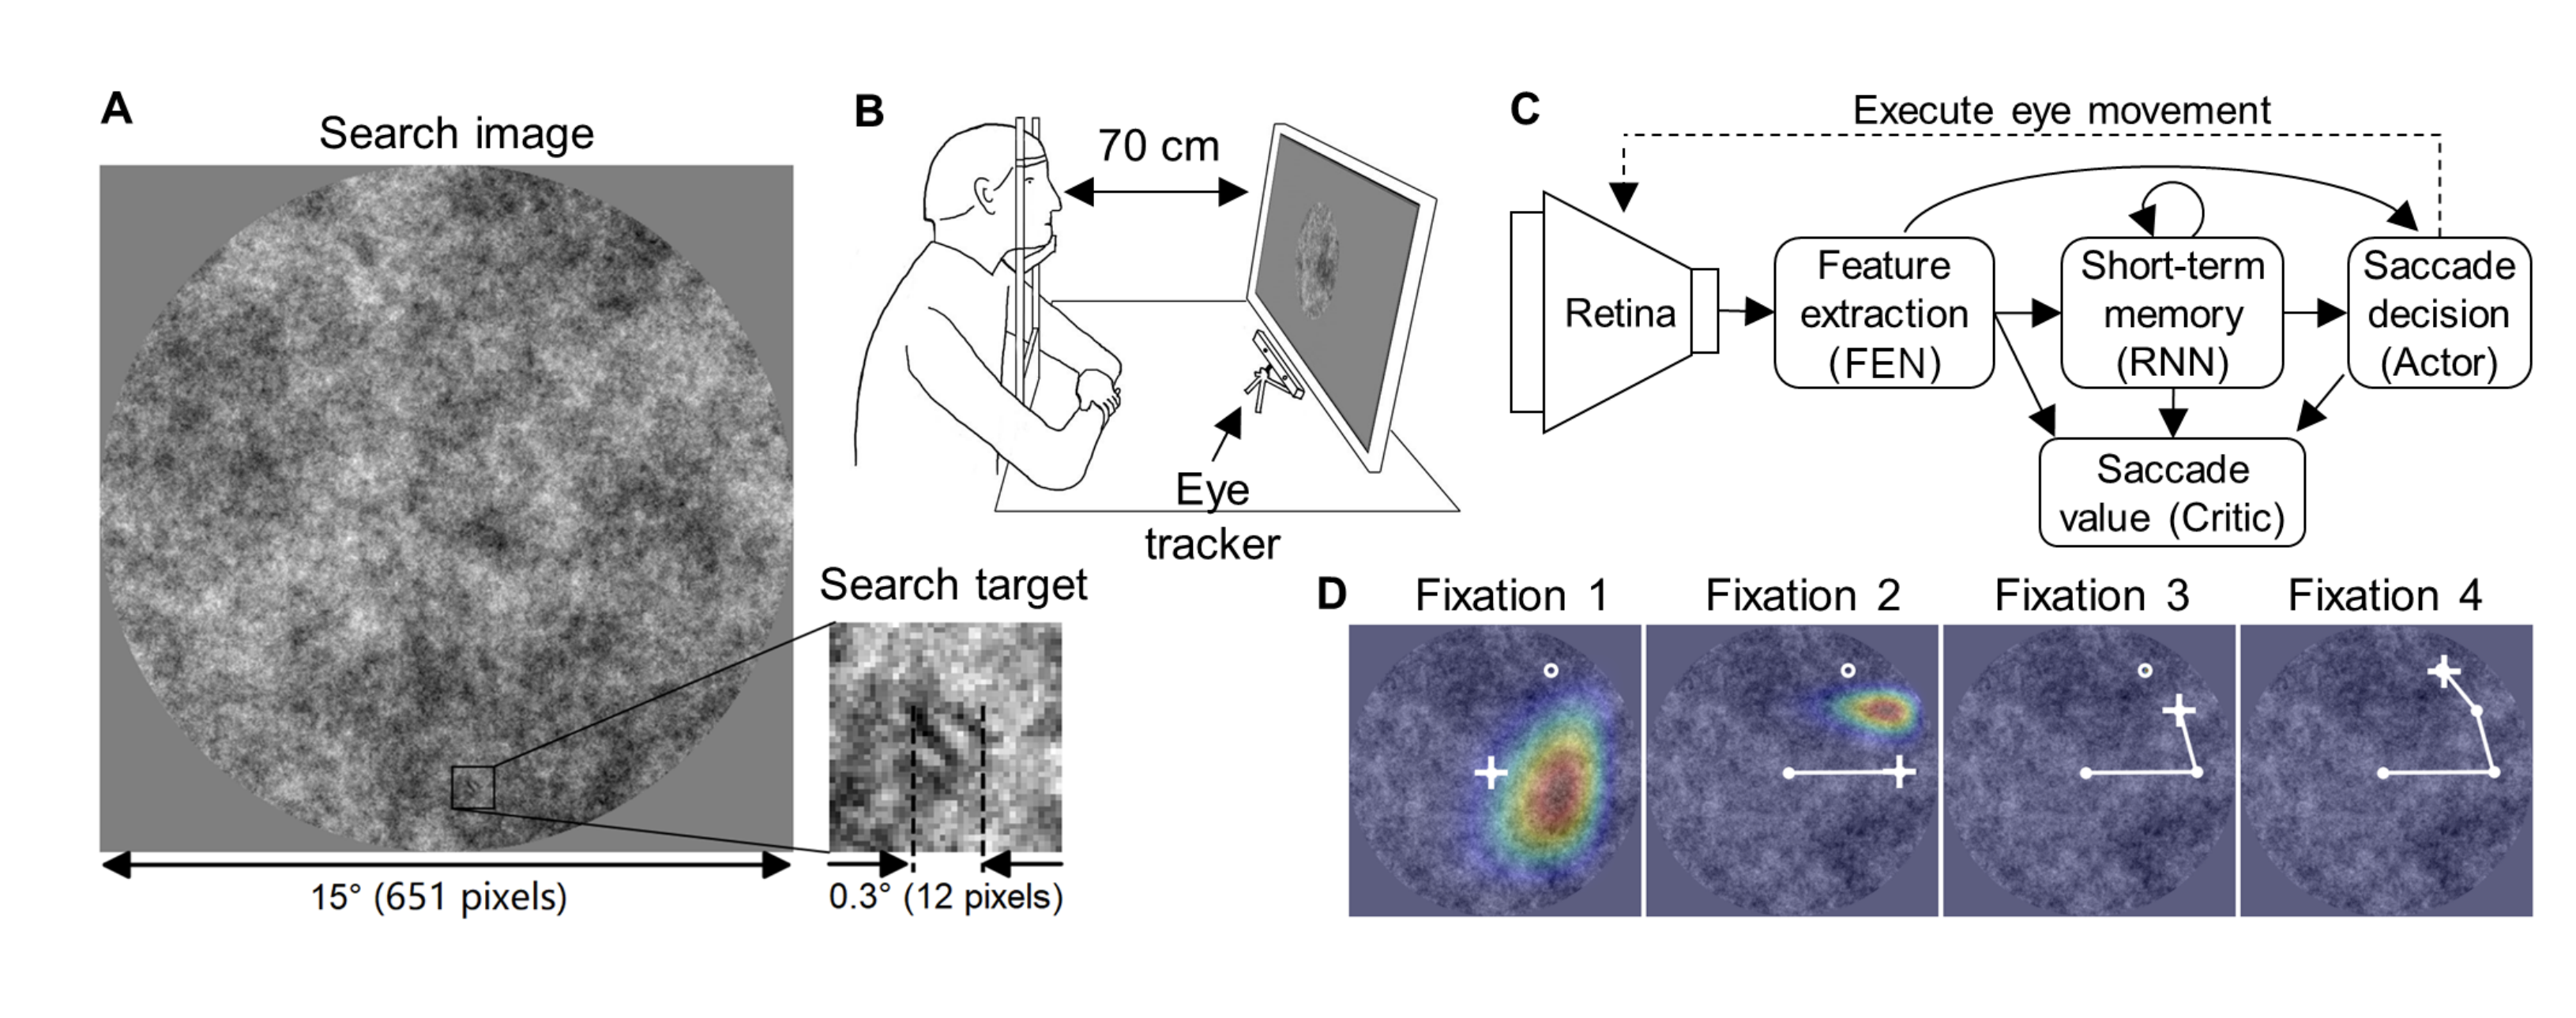 仿人眼脉冲神经网络进行视觉搜索任务示意图